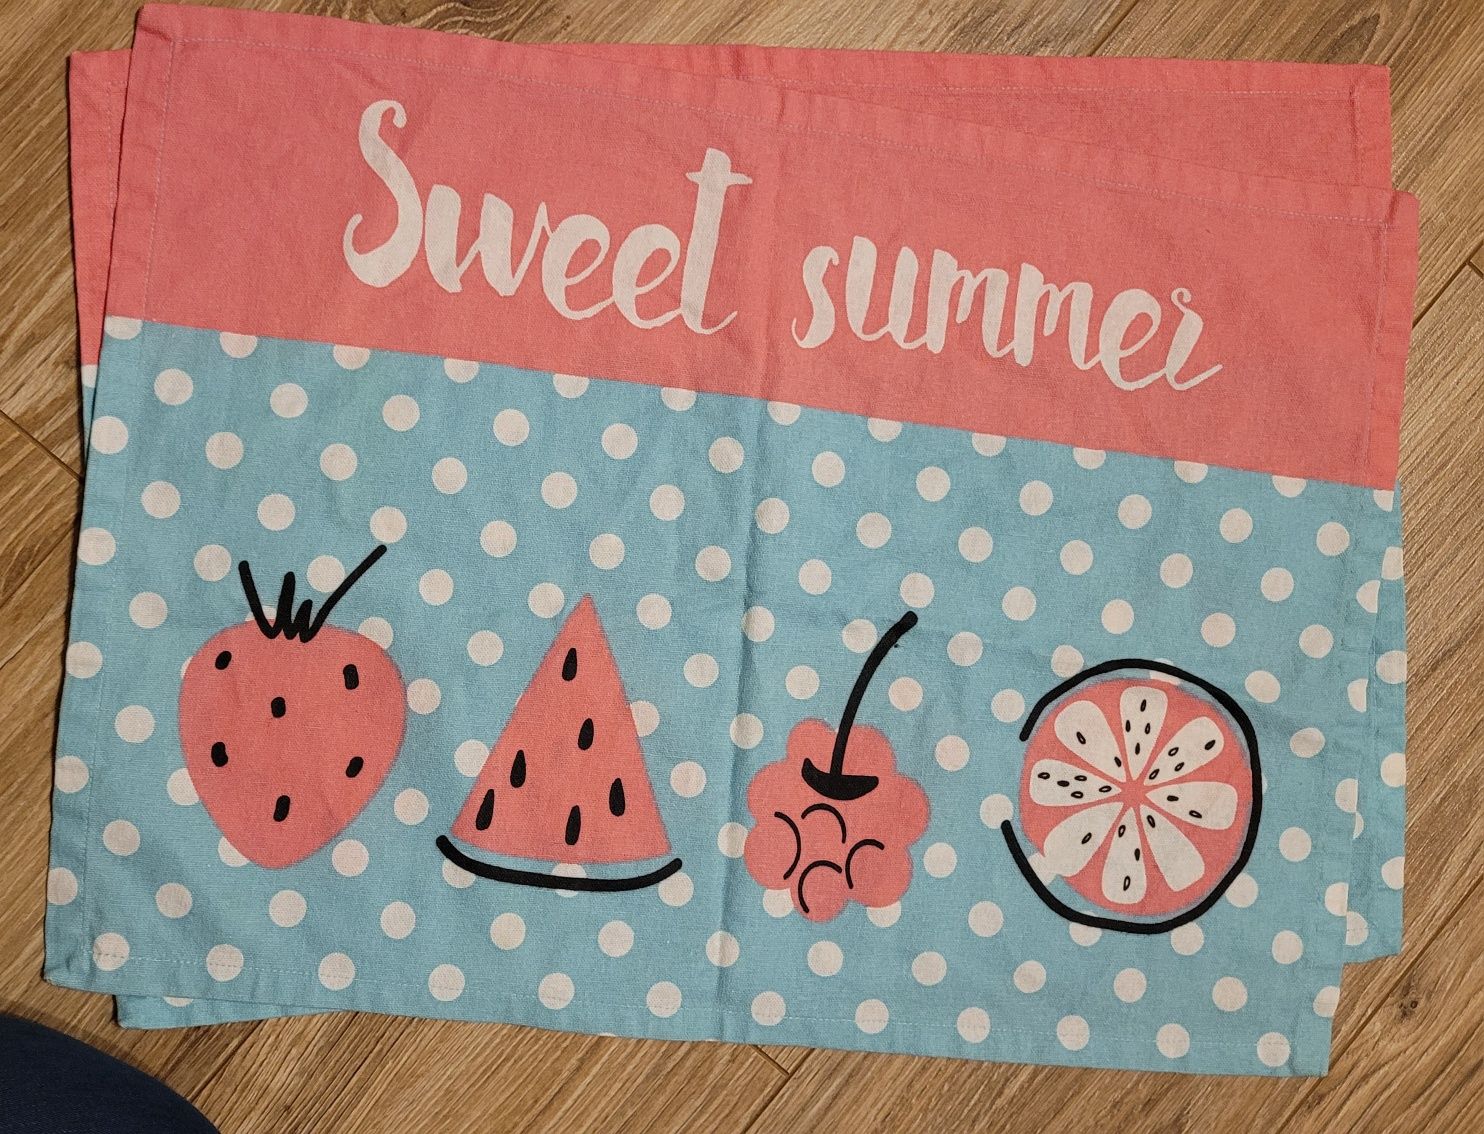 Sweet summer - 4 x podkładki bawełniane na stół - słodkie!